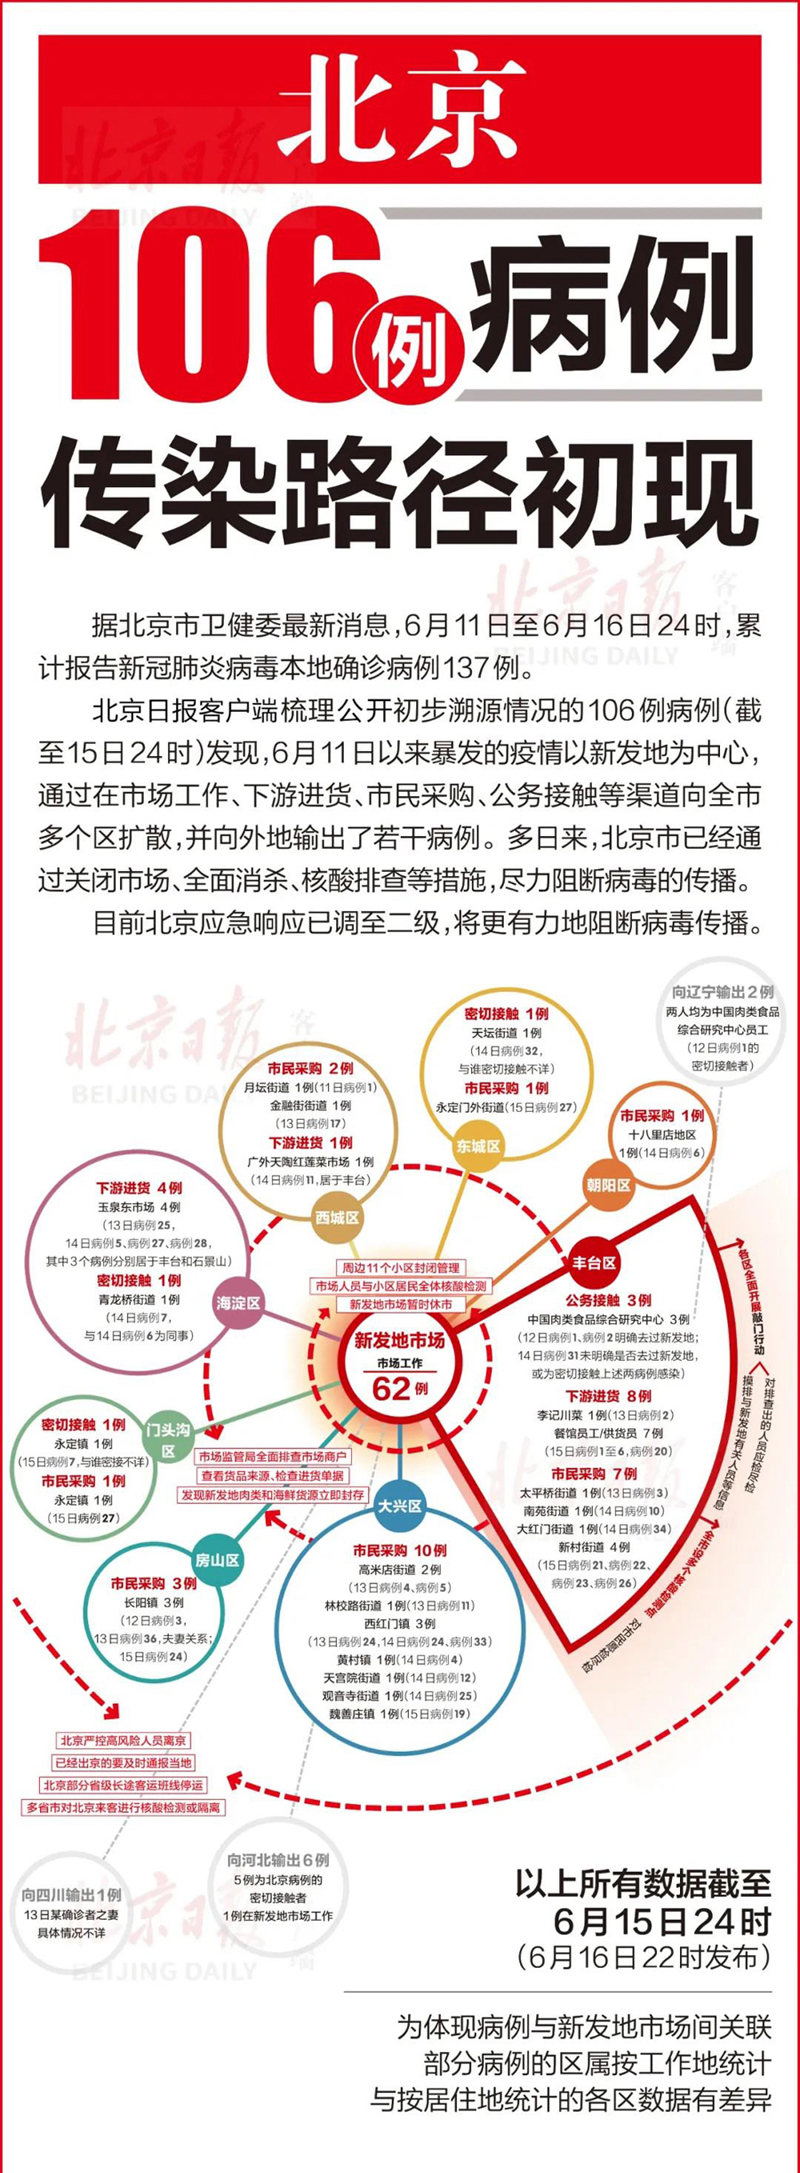 北京市疾控中心副主任庞星火表示,初步推断,本次疫情由人际传播或物品